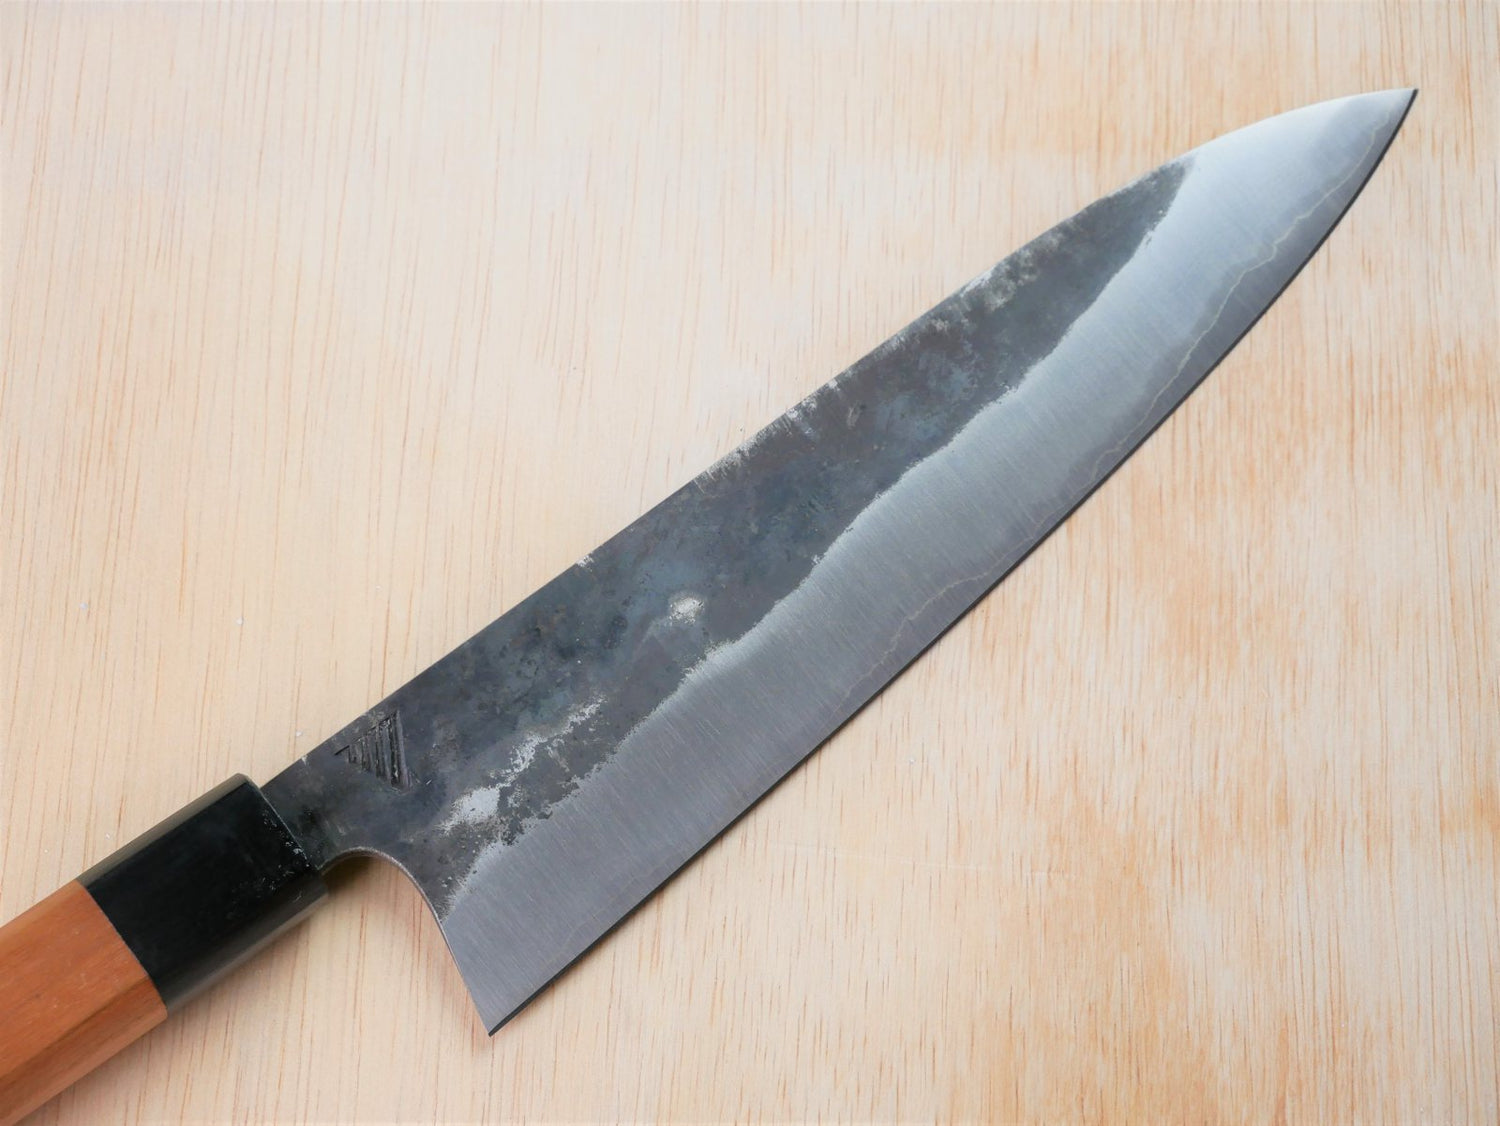 Blade of Kurouchi gyuto made by Asano Fusataro